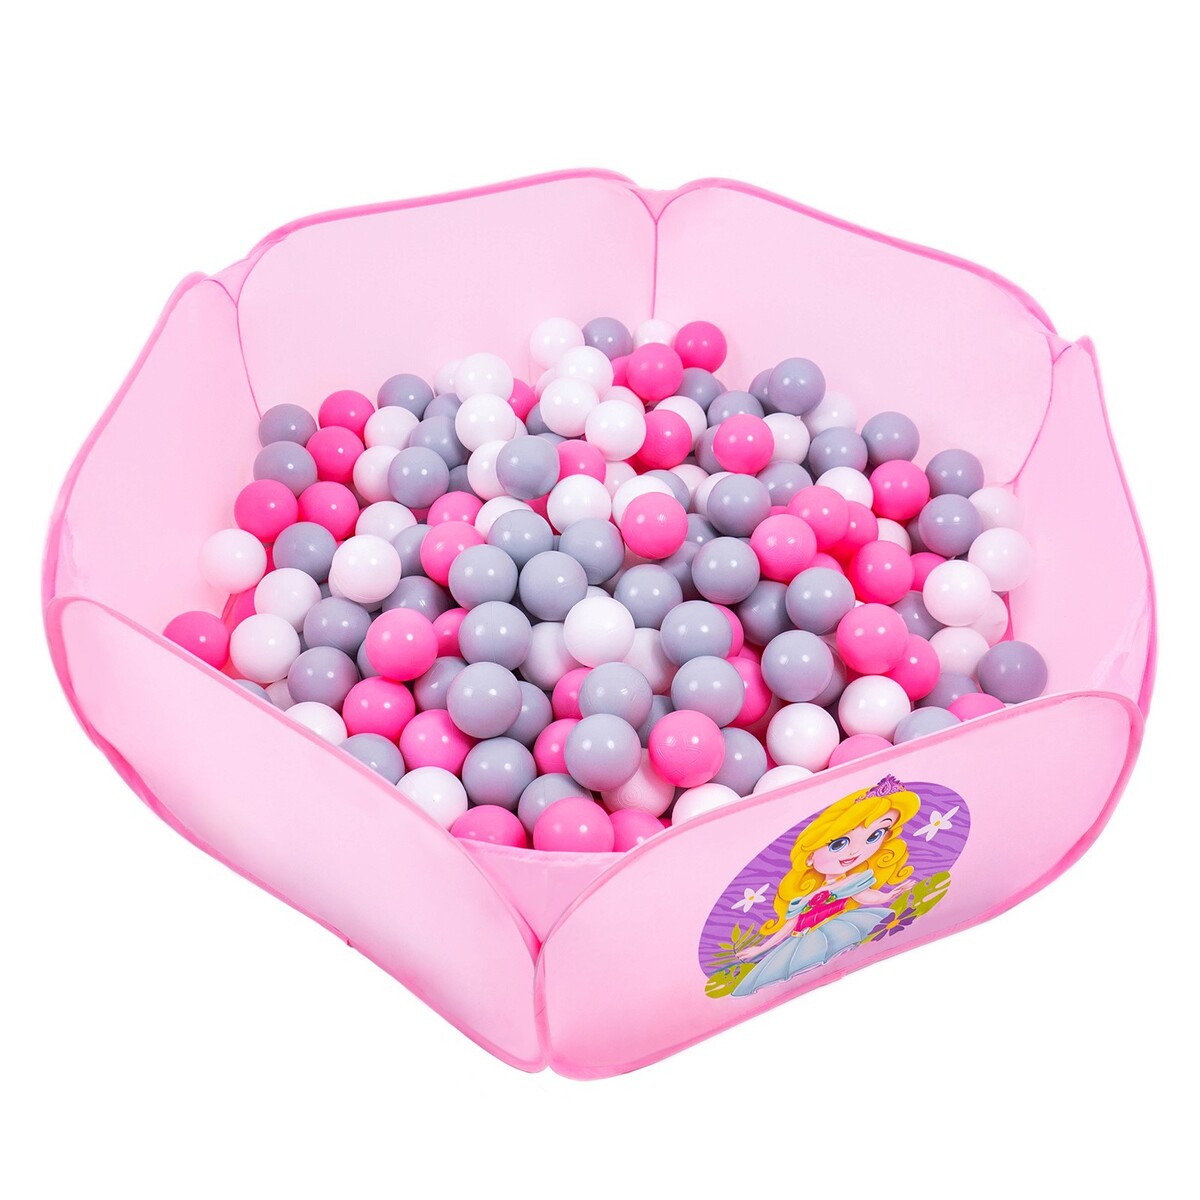 Шарики для сухого бассейна с рисунком, диаметр шара 7,5 см, набор 30 штук, цвет розовый, белый, серый шарики для сухого бассейна 100 штук диаметр 5 см